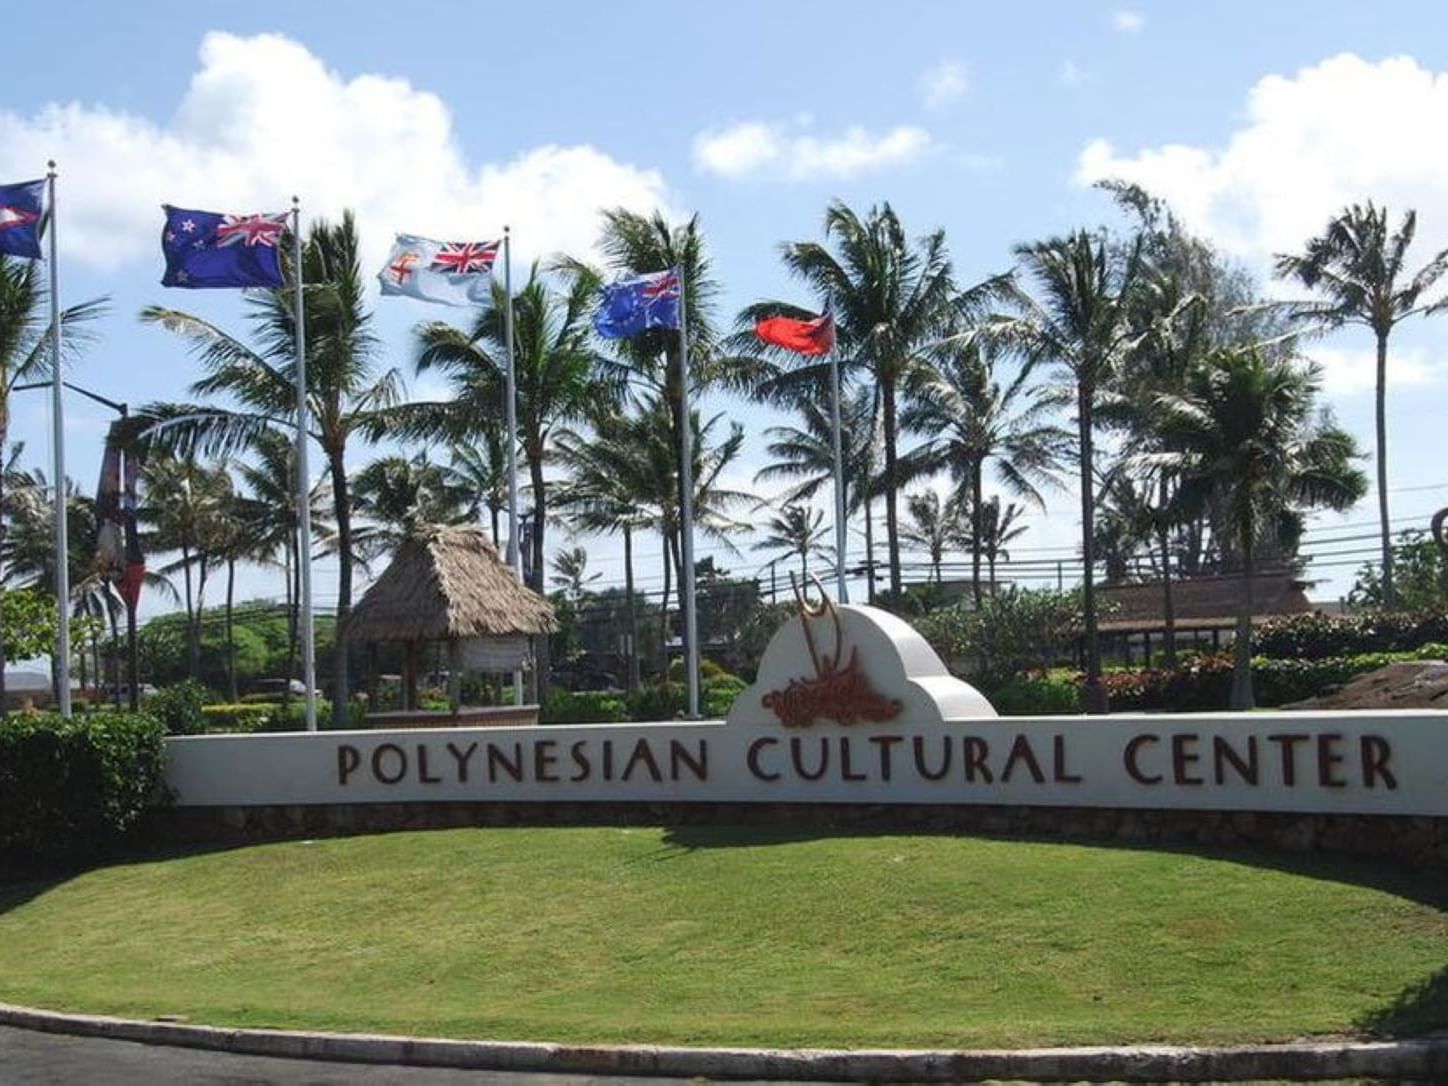 Sign of Polynesian Cultural Center near Stay Hotel Waikiki